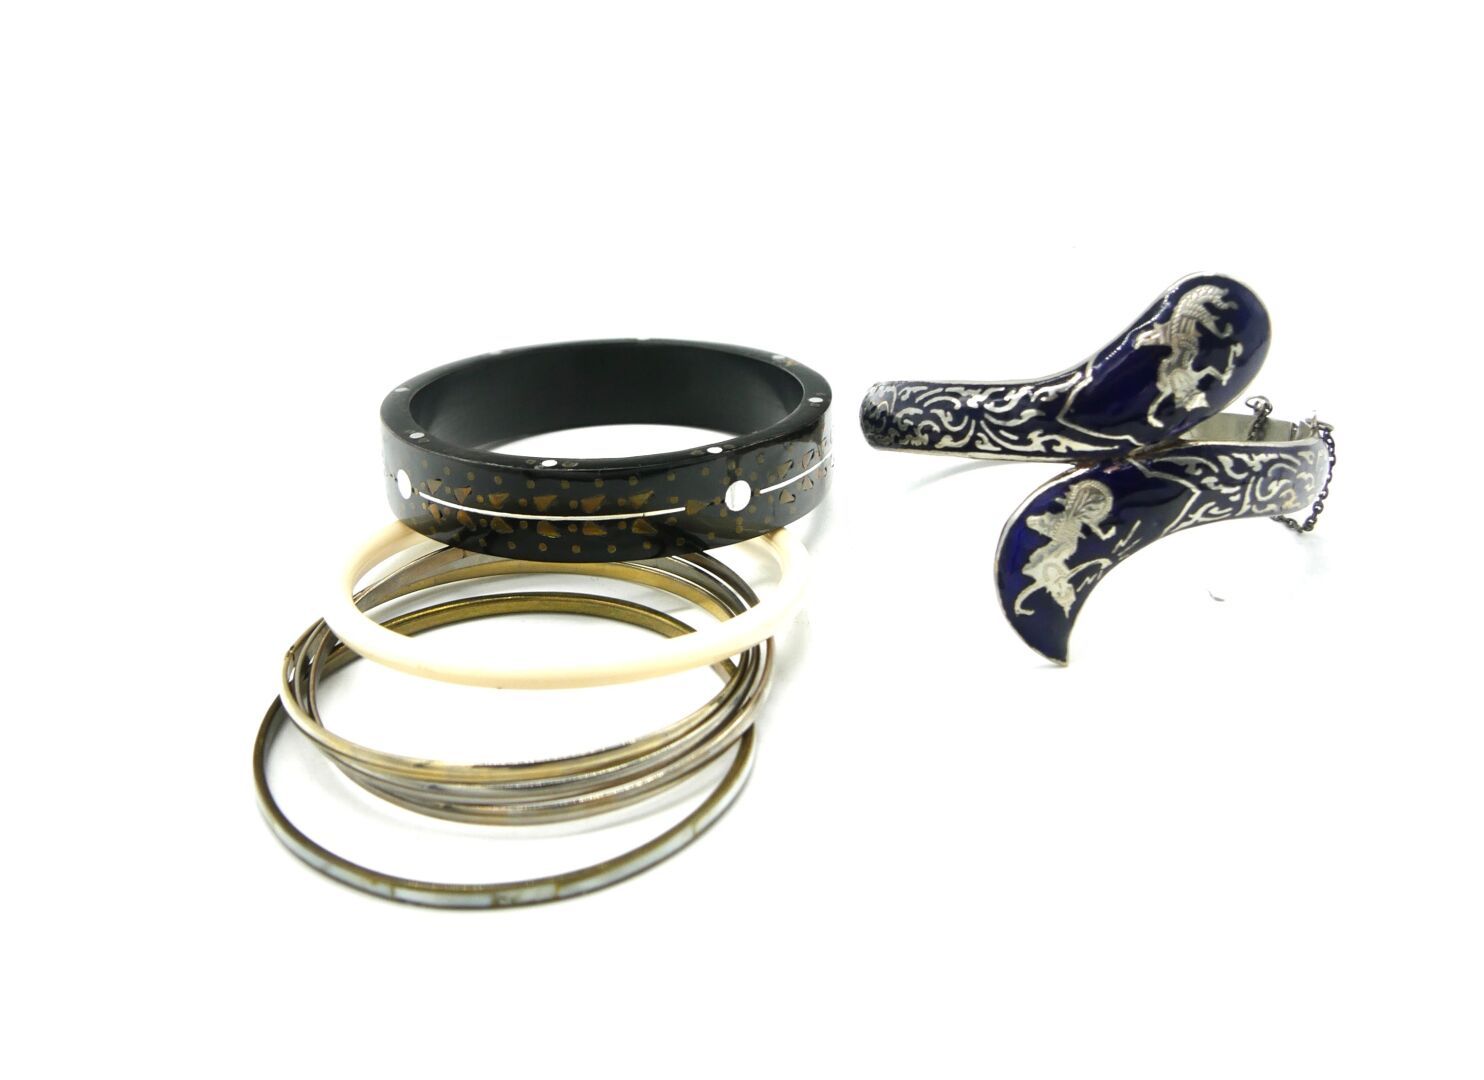 Null 服装珠宝

四件花式手链，包括:

- 一条镀银金属手链，上面有蓝色珐琅装饰。珐琅质磨损，略有变形

- 一个彩绘木质手镯

- 一个象牙色的手镯

&hellip;